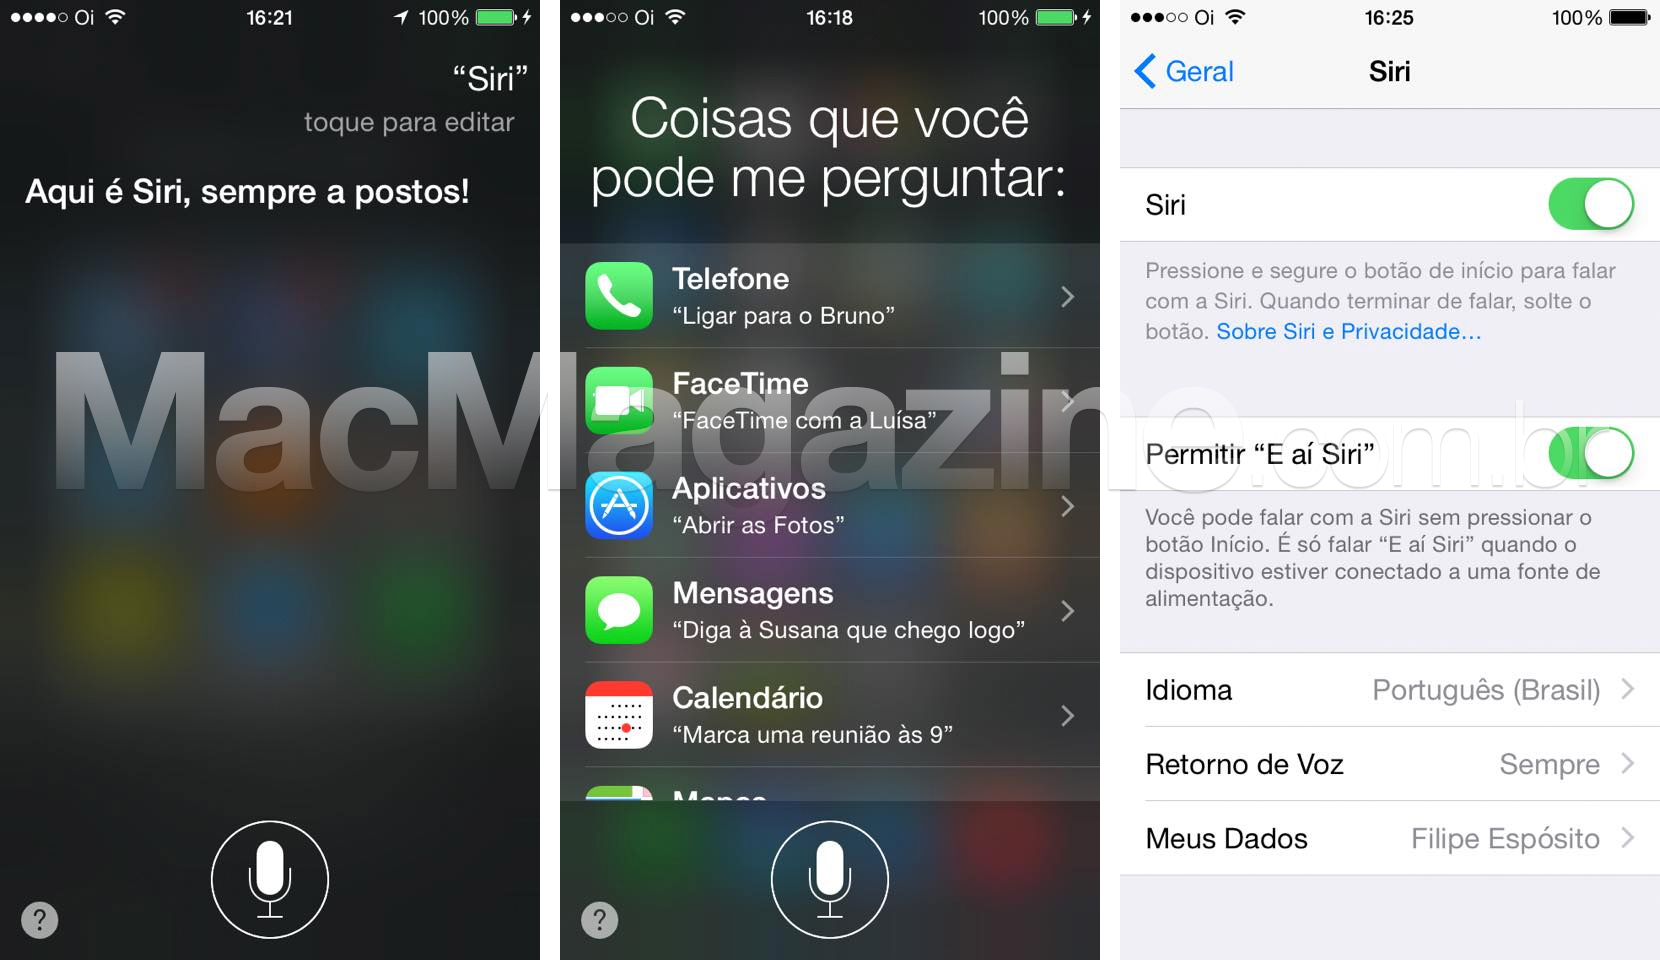 Siri em português no iOS 8.3